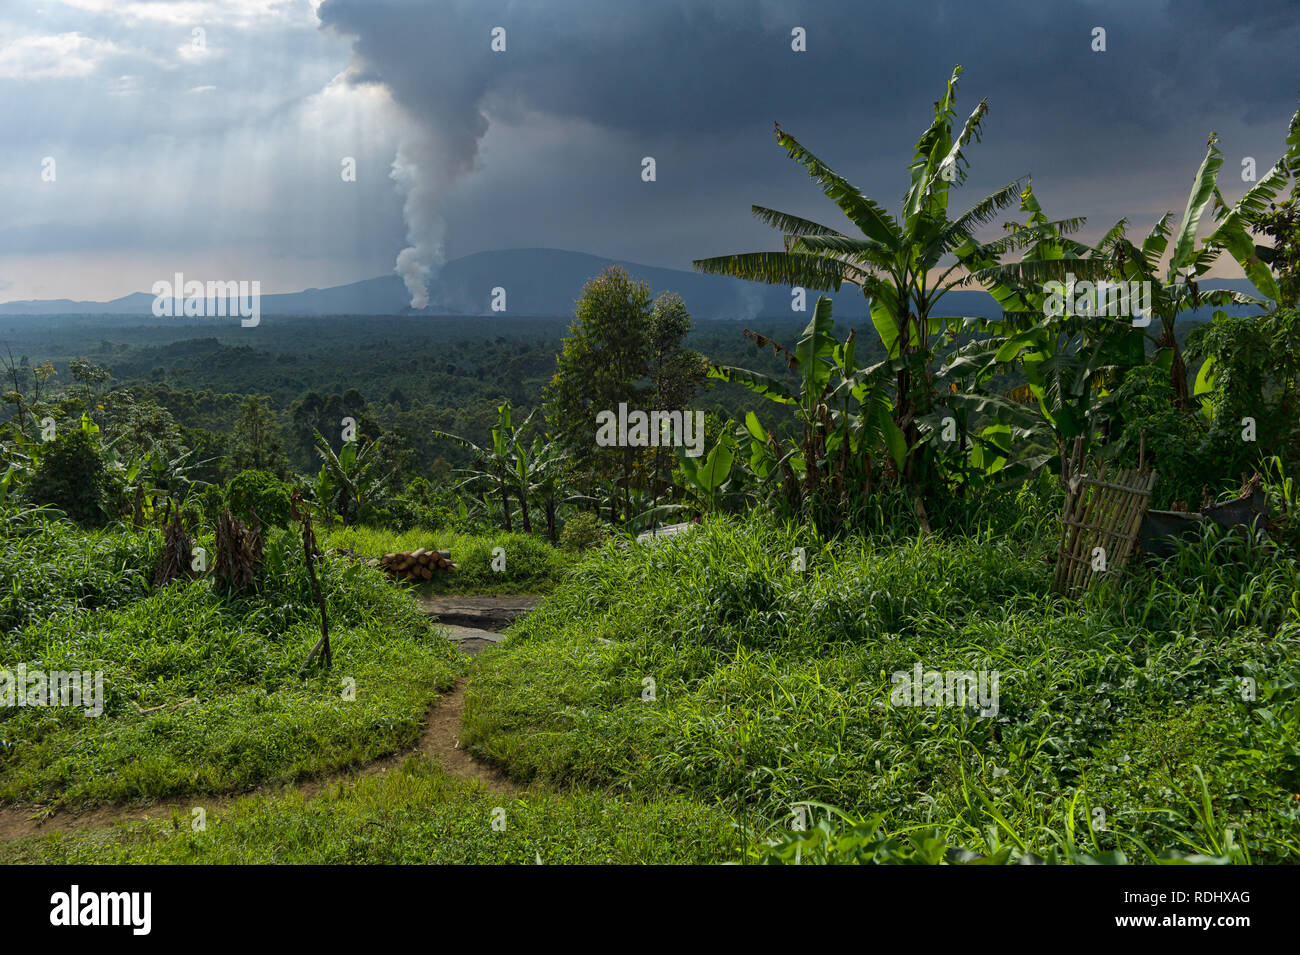 Nyamuragira, un volcan actif, éclate dans l'arrière-plan d'un village rural à l'intérieur du Parc National des Virunga, en République démocratique du Congo. Banque D'Images